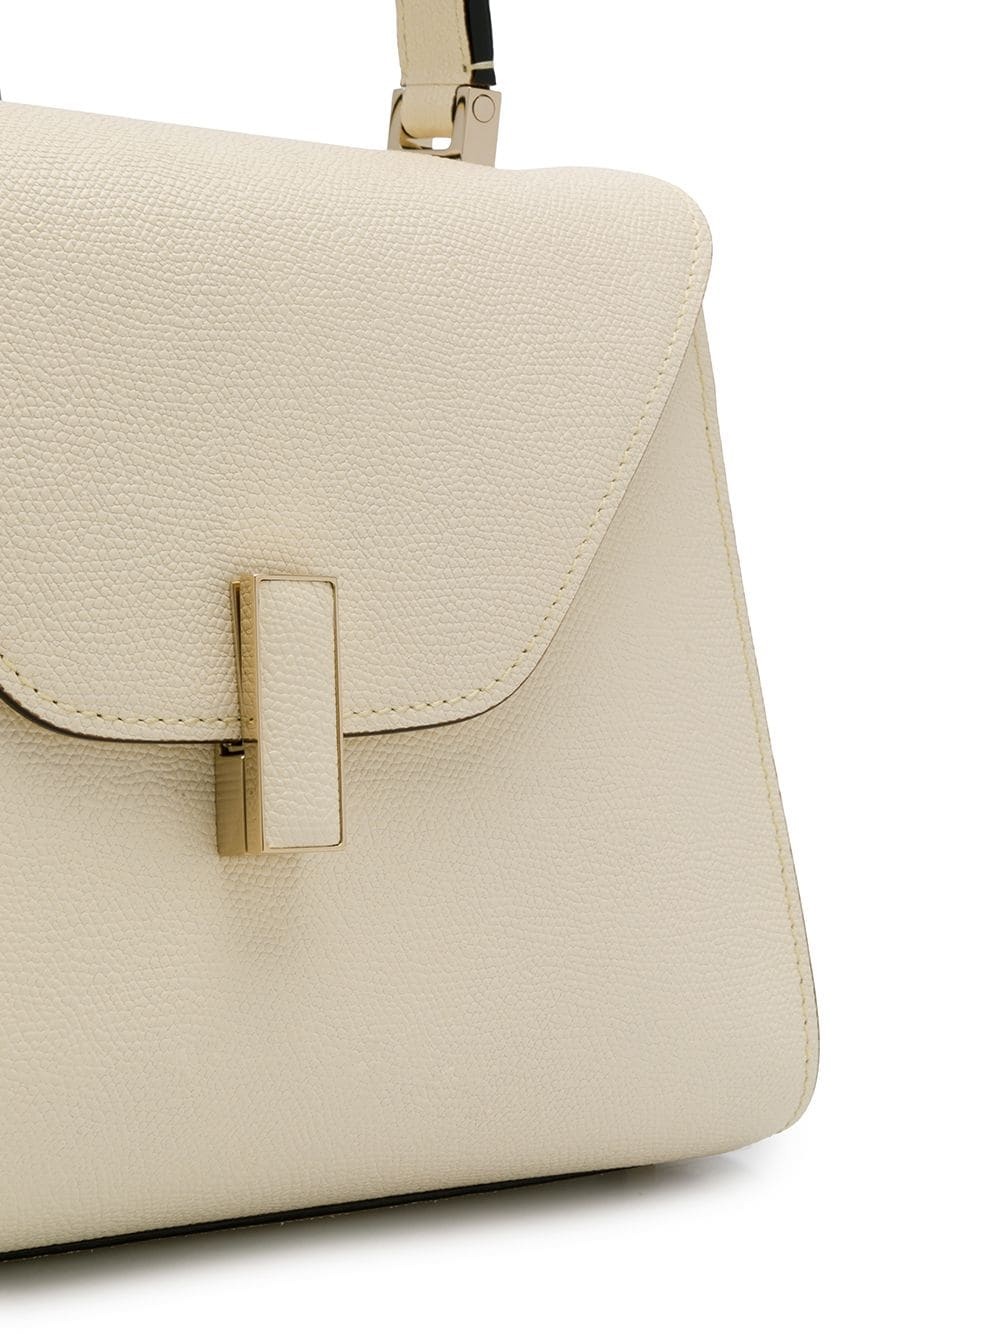 Iside medium leather handbag - 4